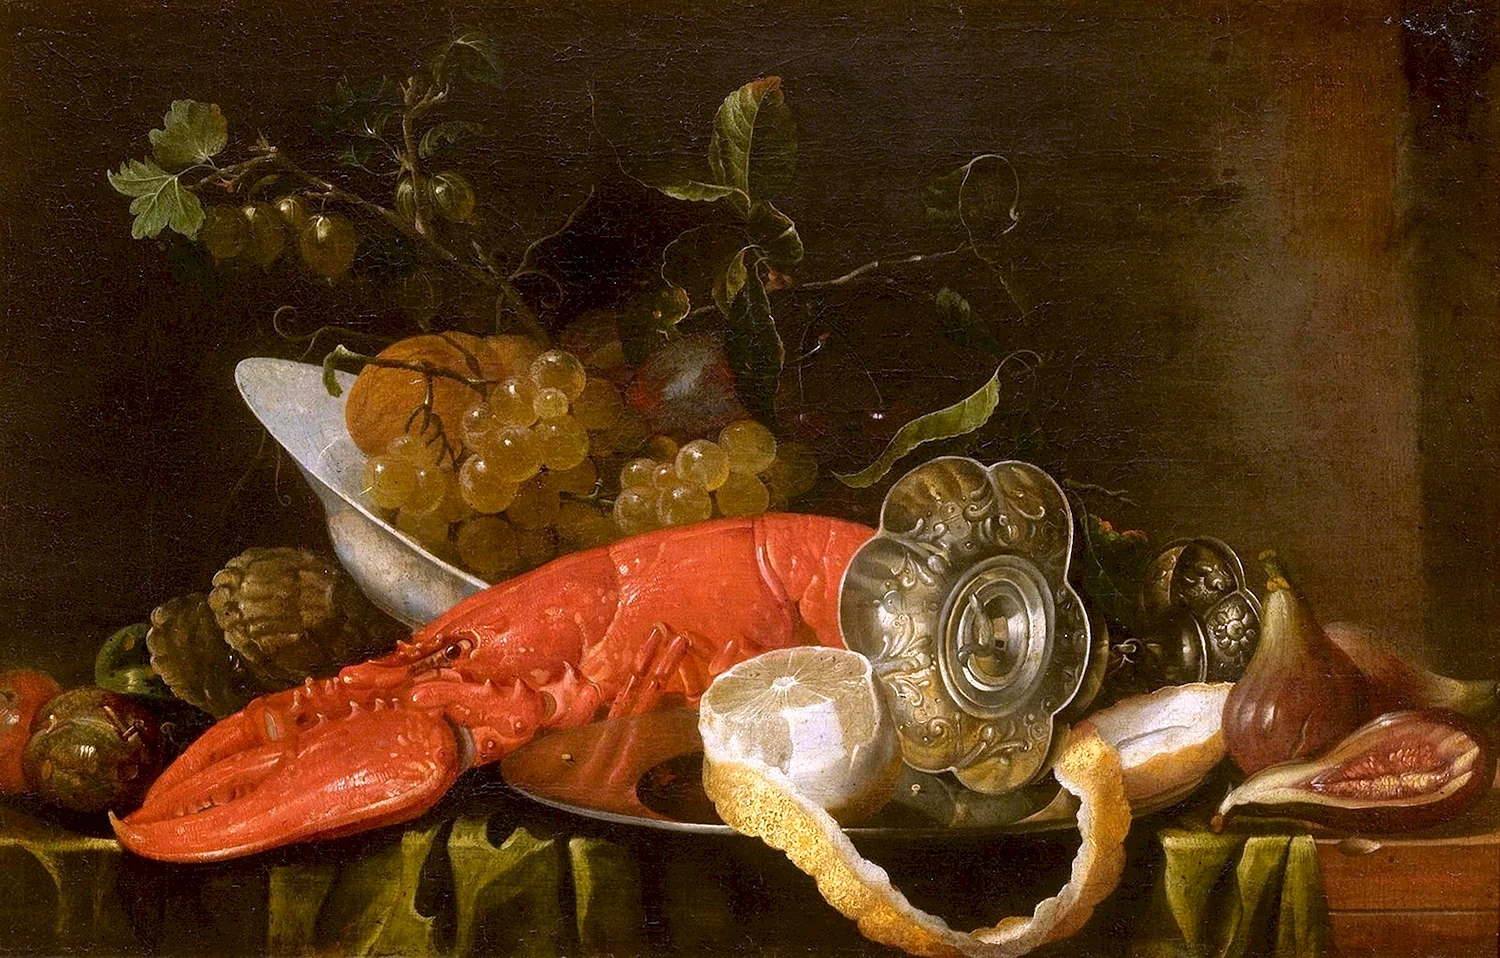 Йорис Ван сон, Joris van son, 1623-1667